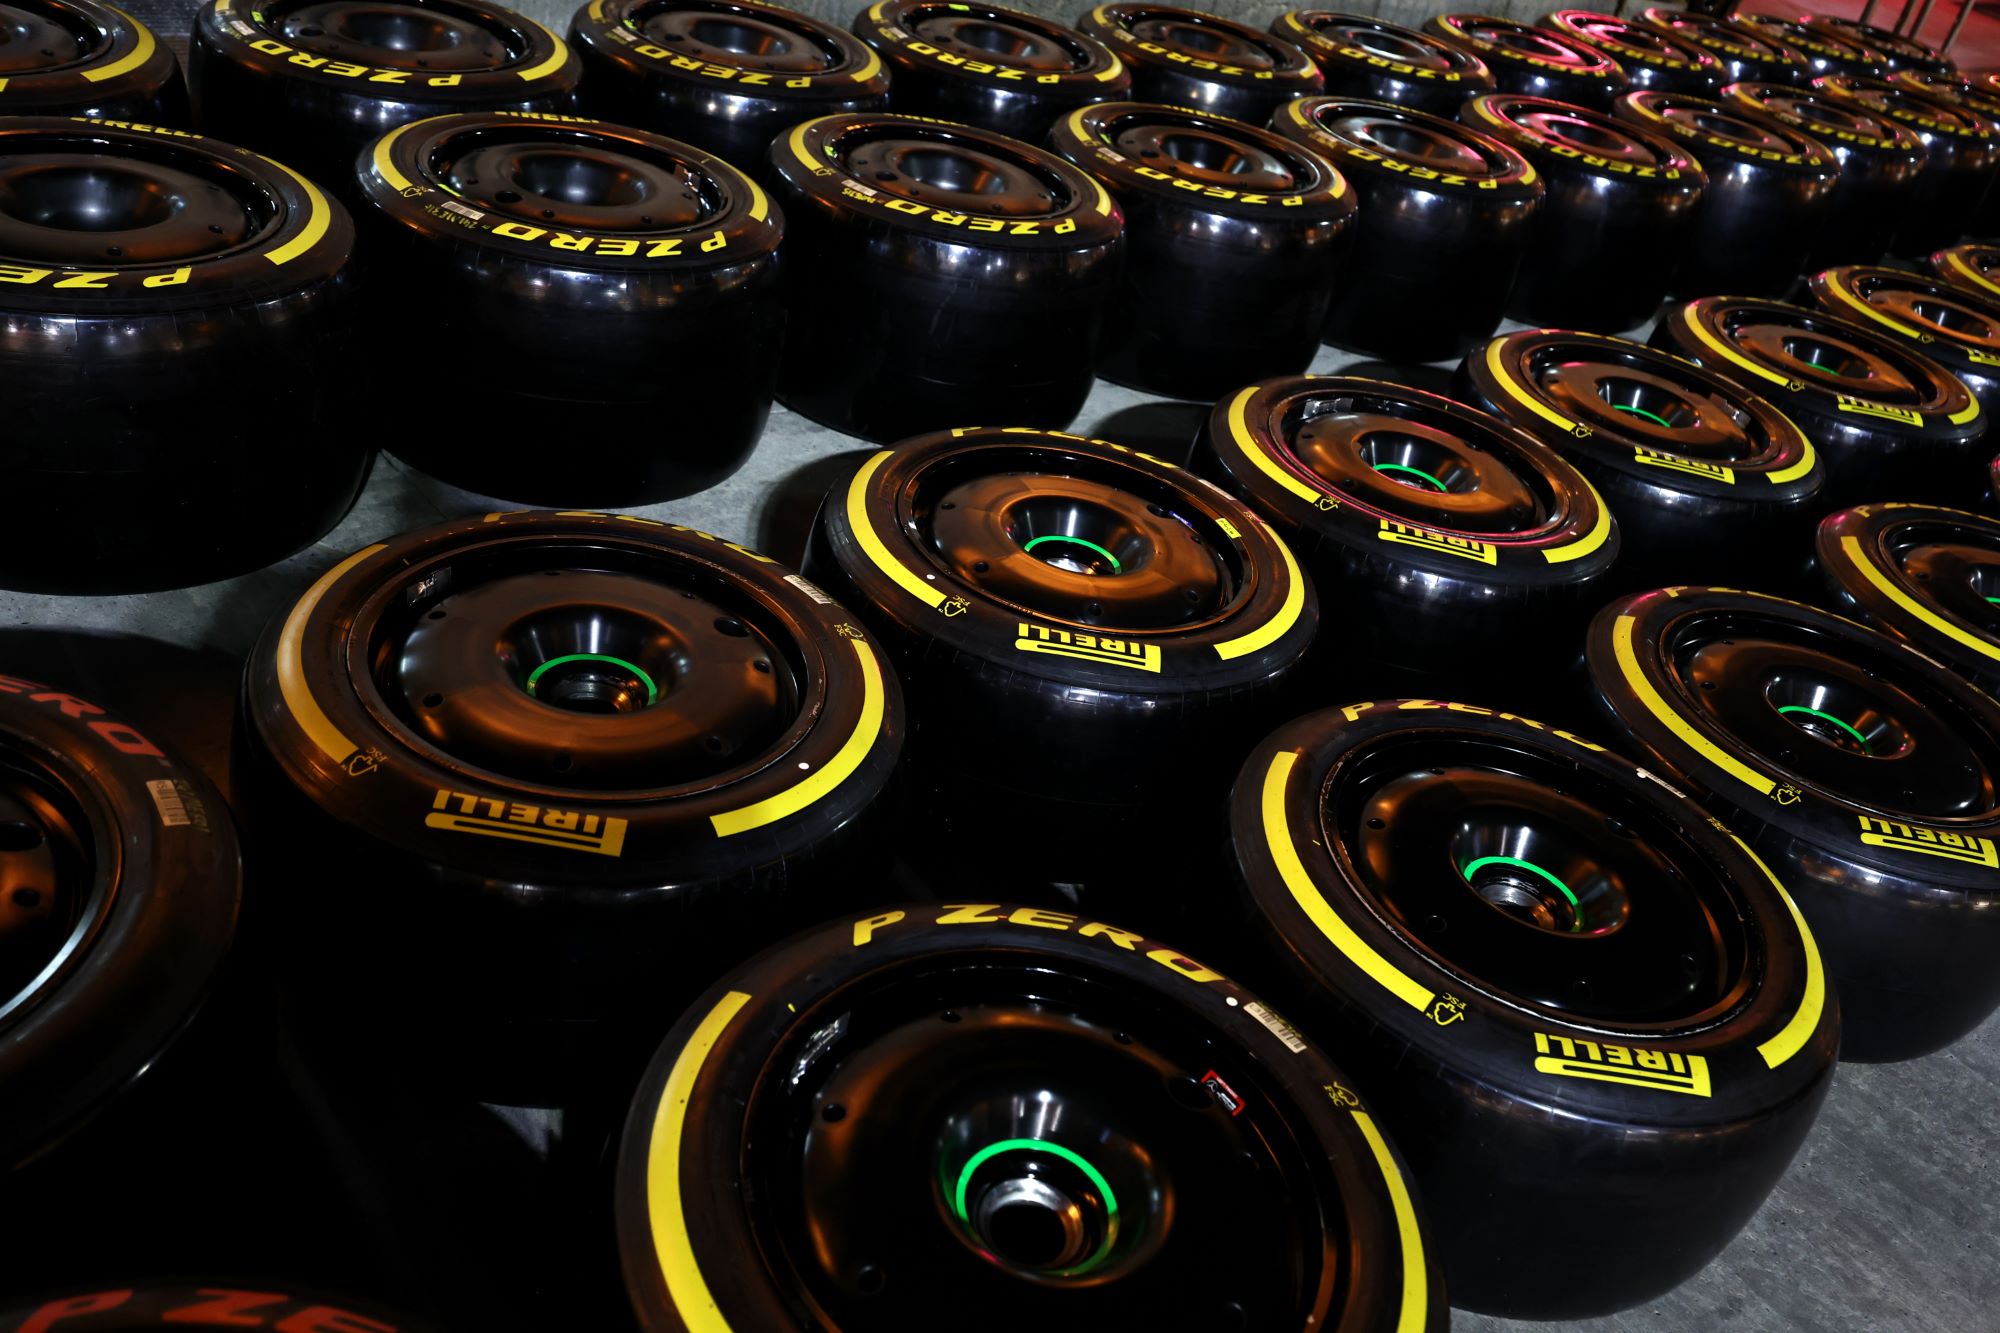 F1: Pirelli investiga comportamento diferente dos pneus em Miami